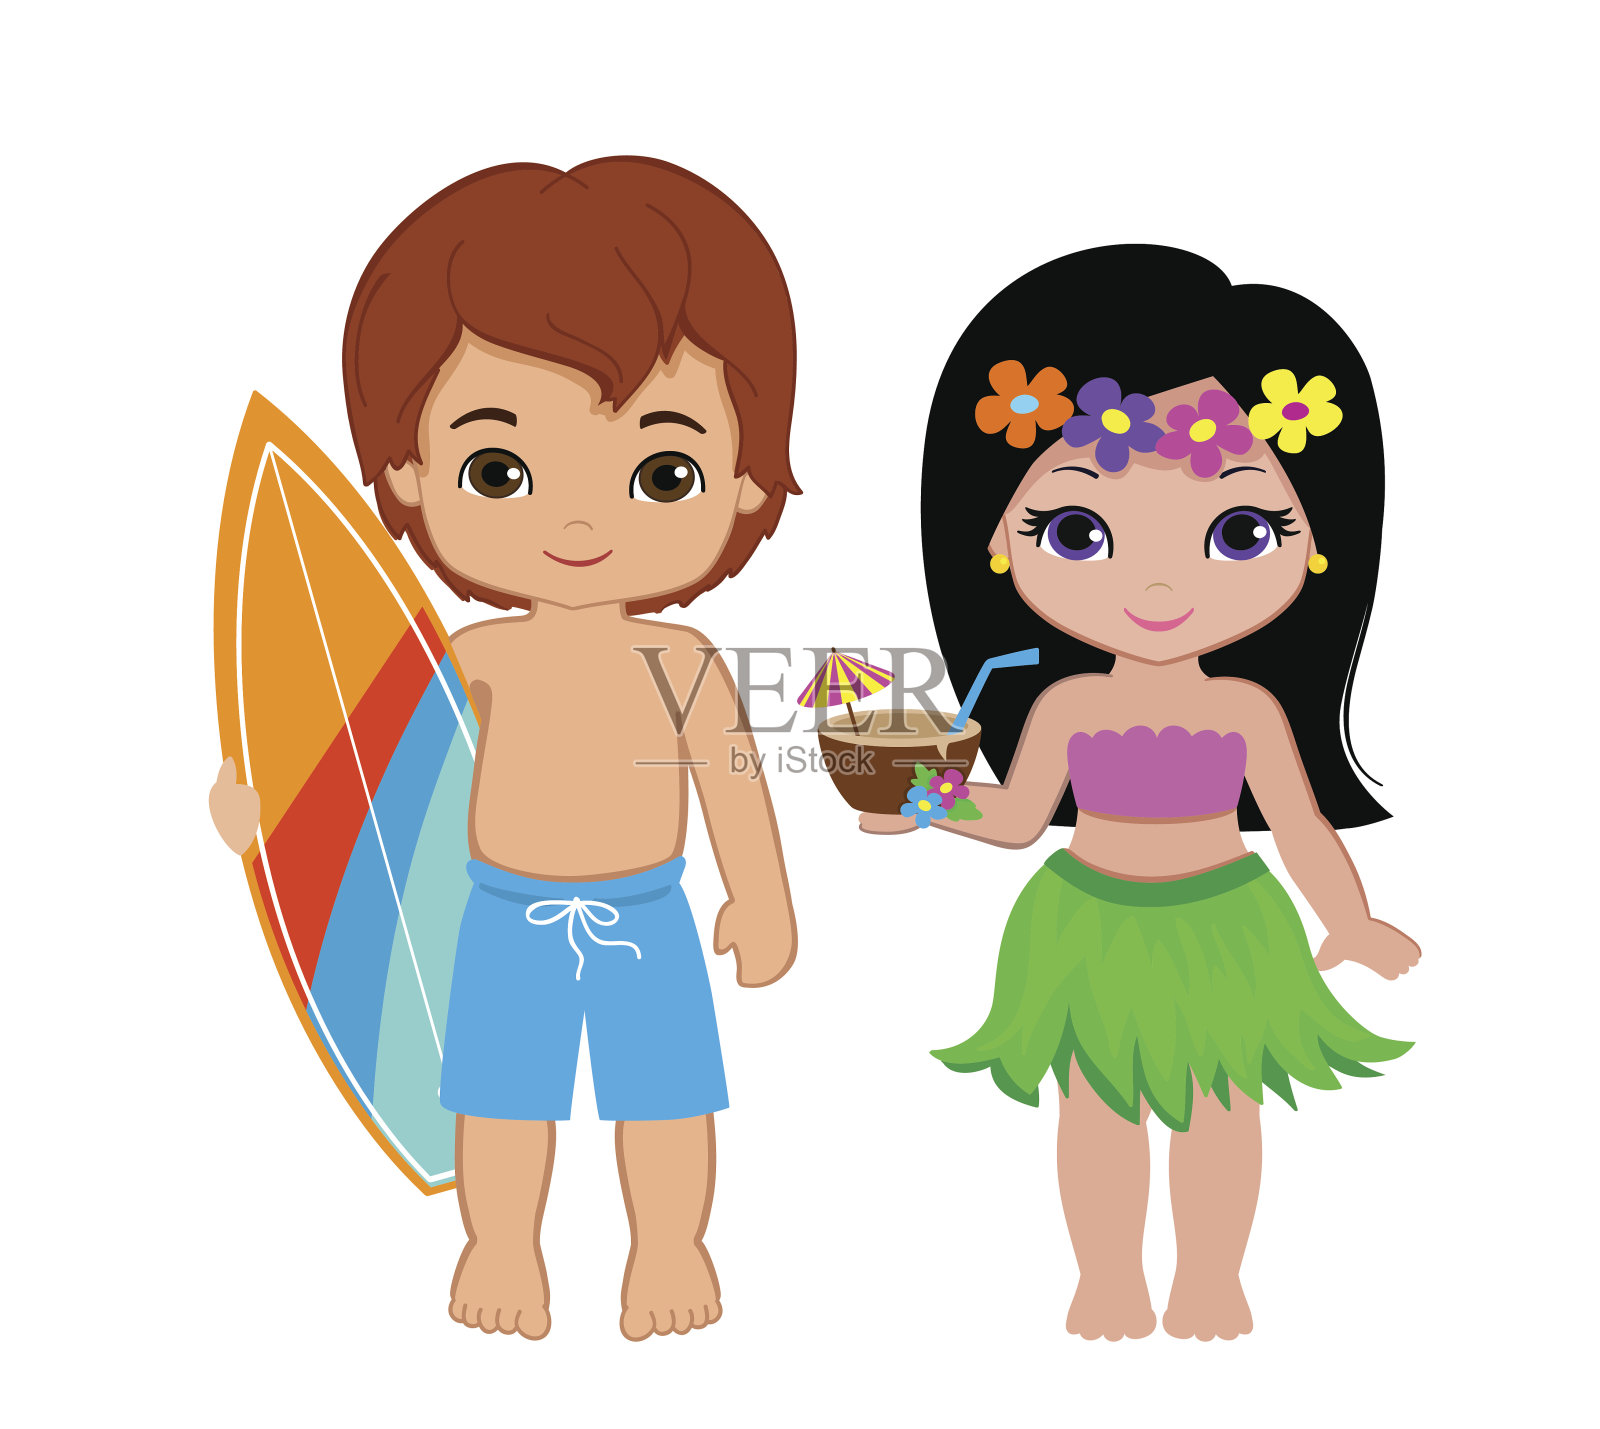 插图可爱的男孩与冲浪板和夏威夷女孩与鸡尾酒。设计元素图片